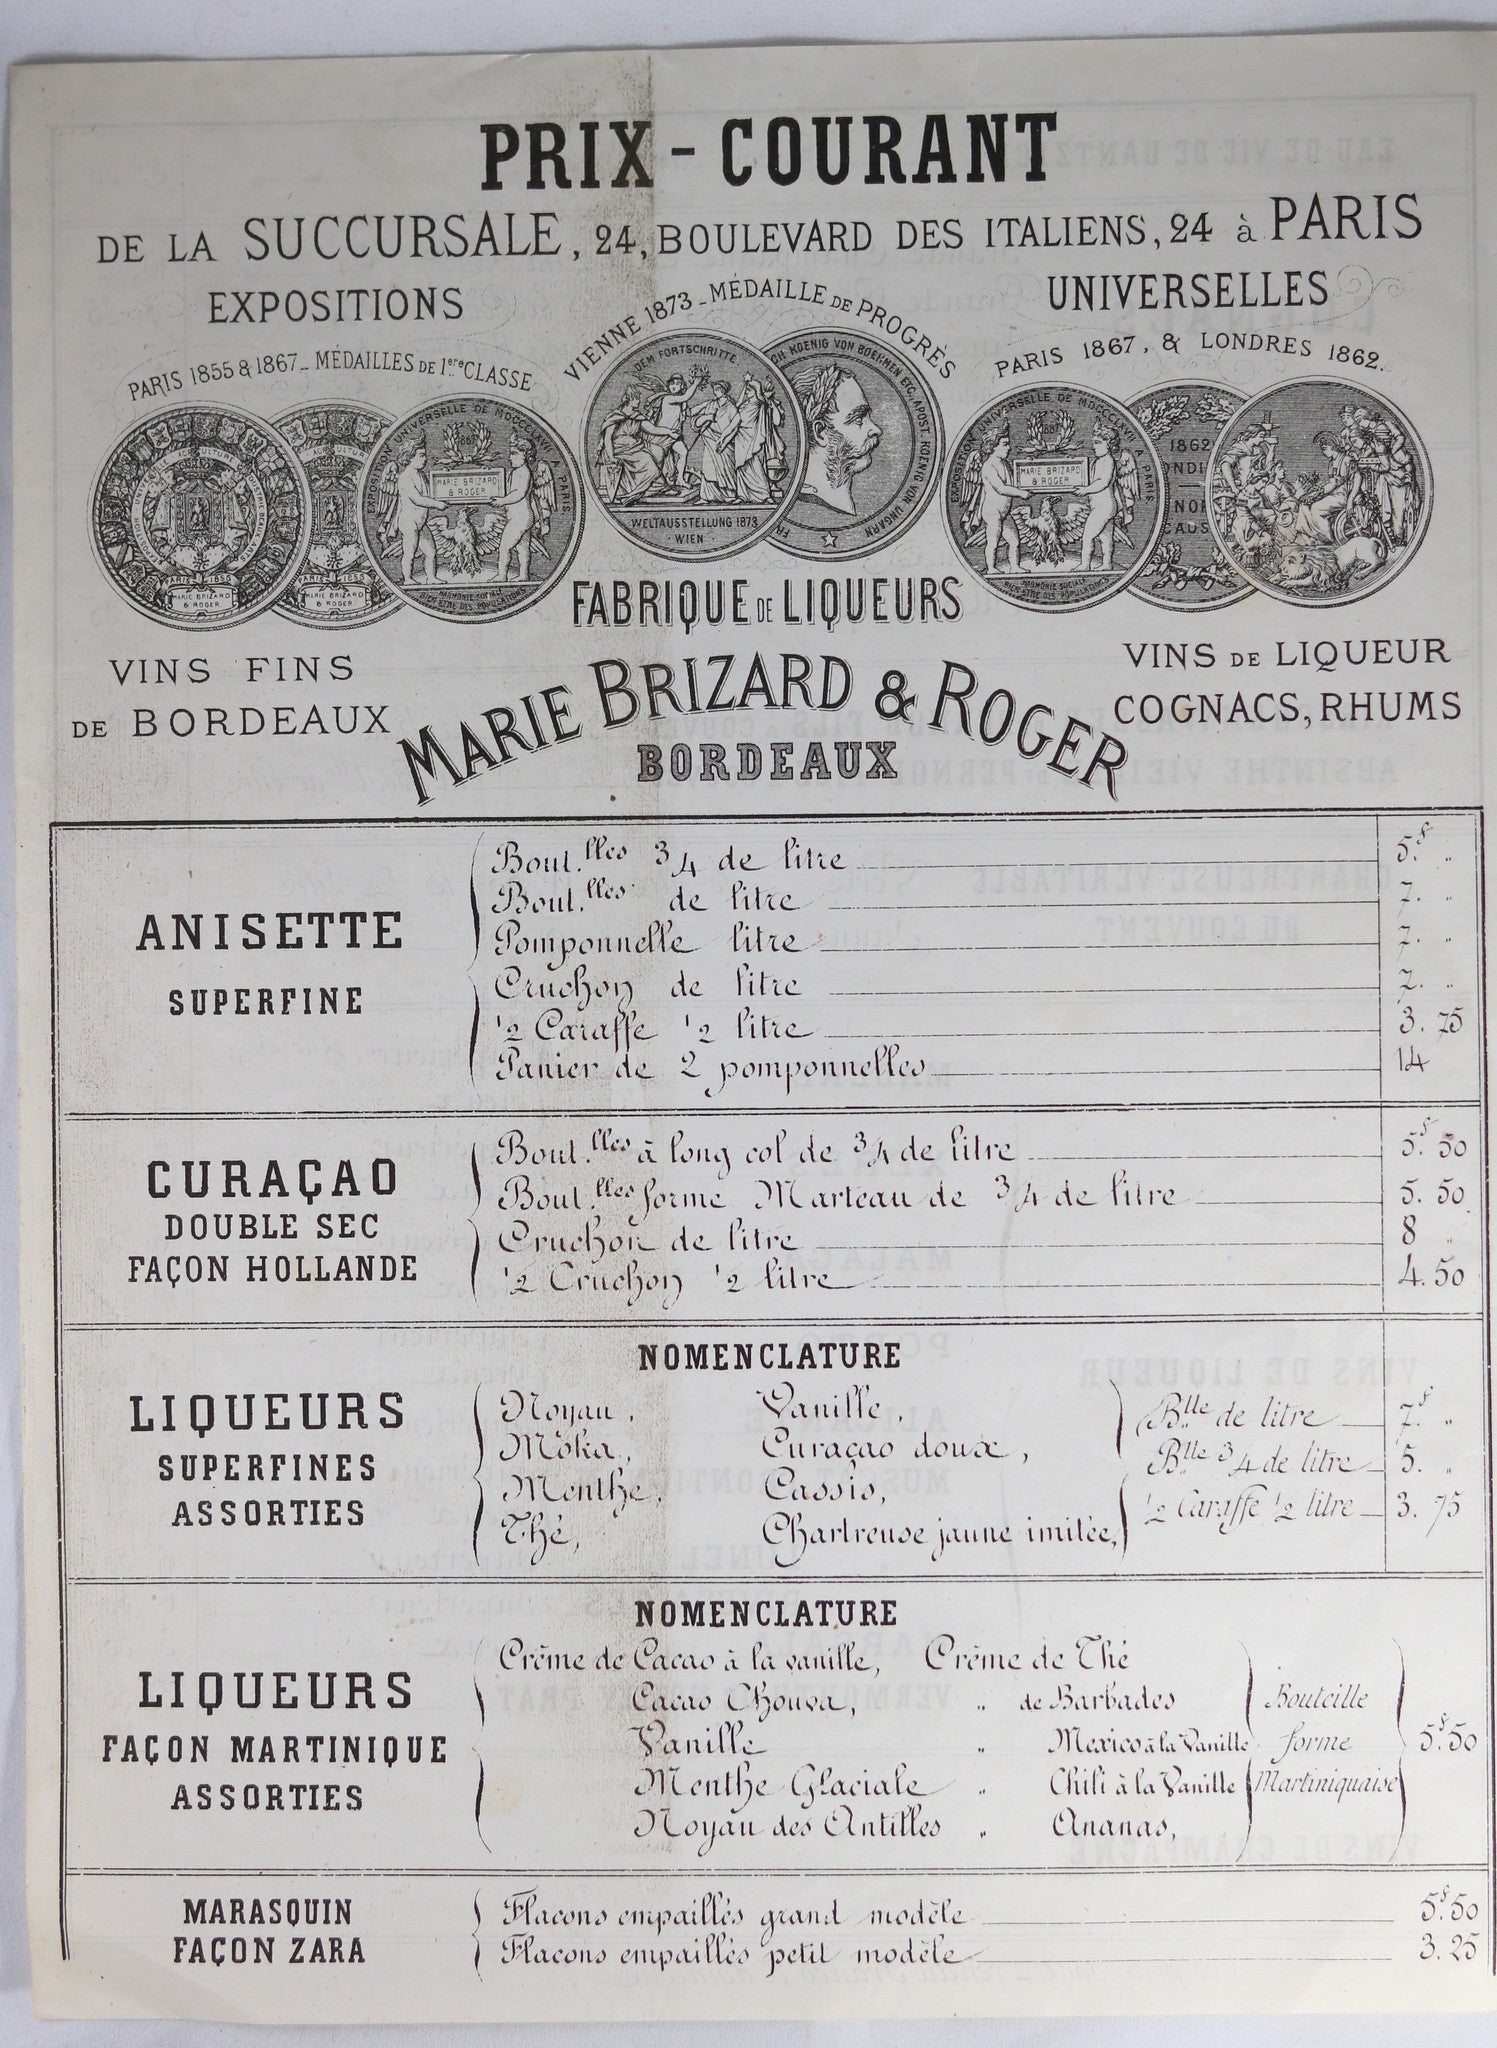 @1875 Marie Brizard & Roger Paris (vins & liqueur) Prix-Courant